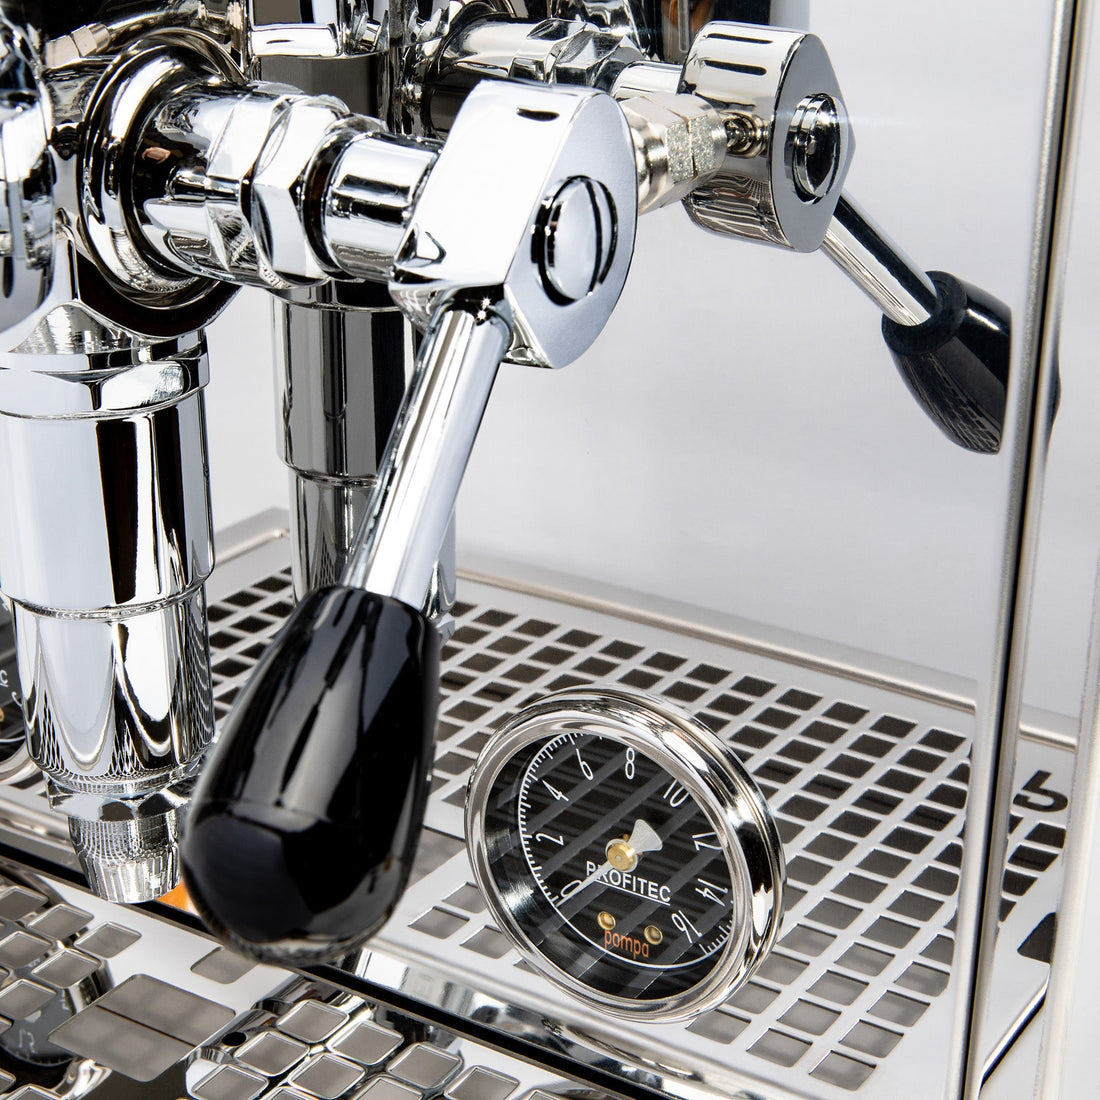 Profitec Pro 600 Dual Boiler Espresso Machine with Quick Steam Plus - Lacewood Quarter Cut